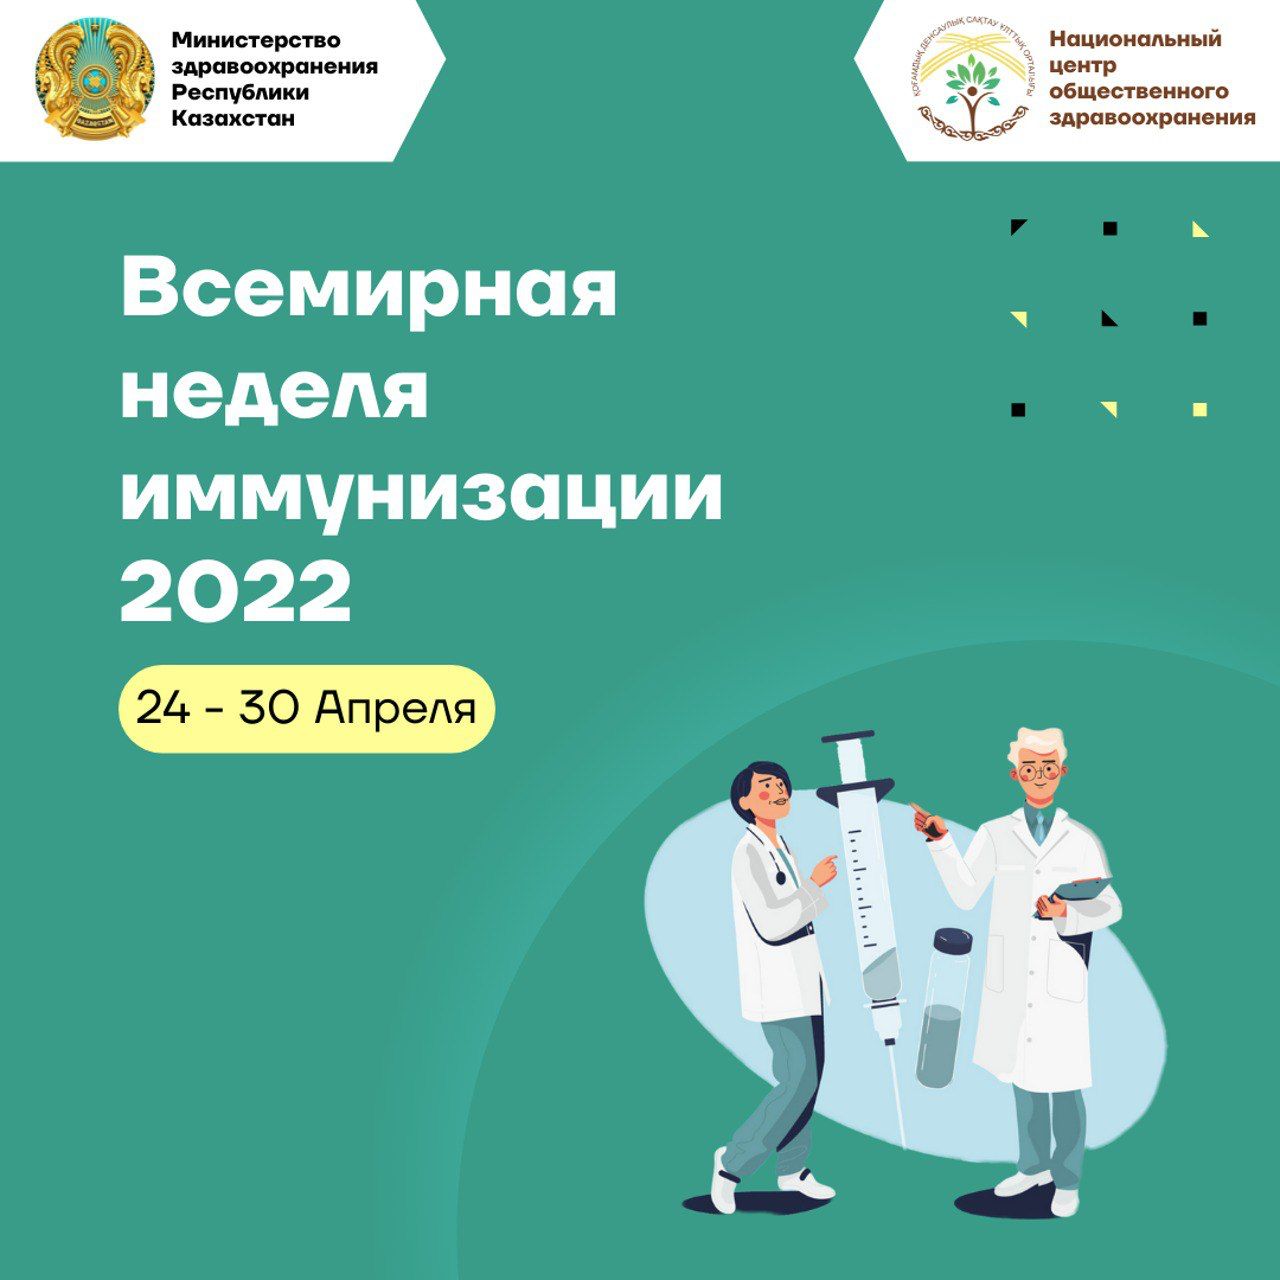 Неделя иммунизации пройдет в Казахстане